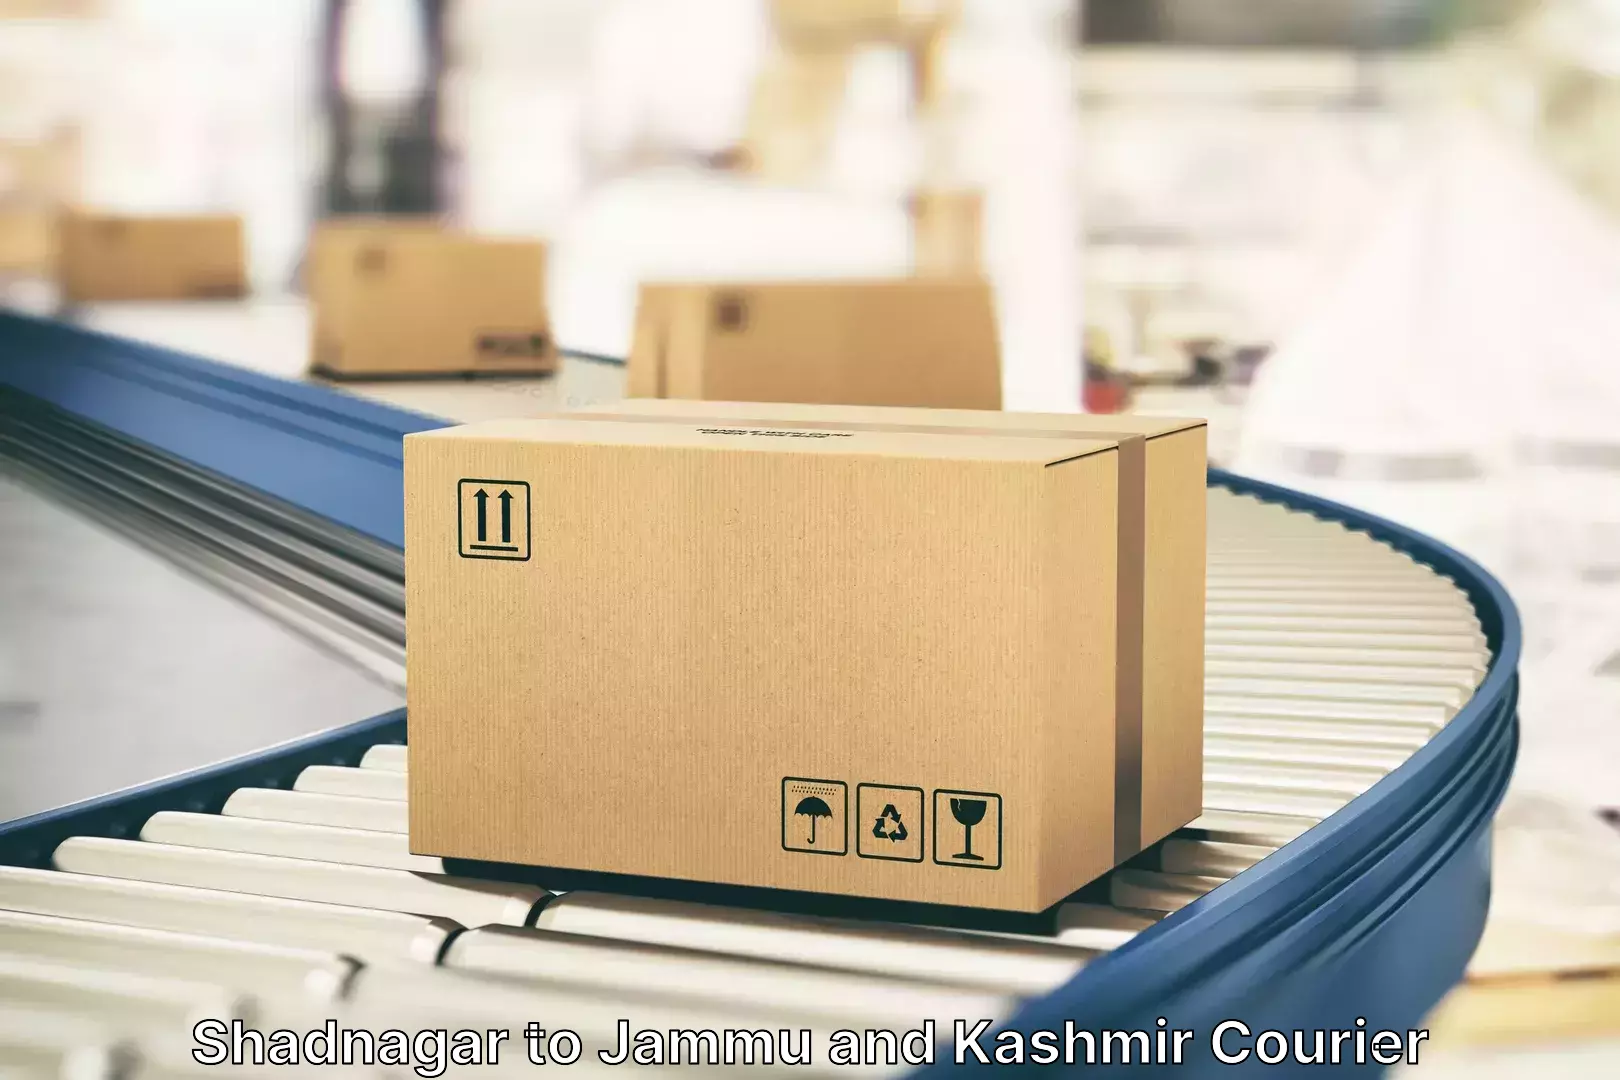 Urgent luggage shipment in Shadnagar to NIT Srinagar